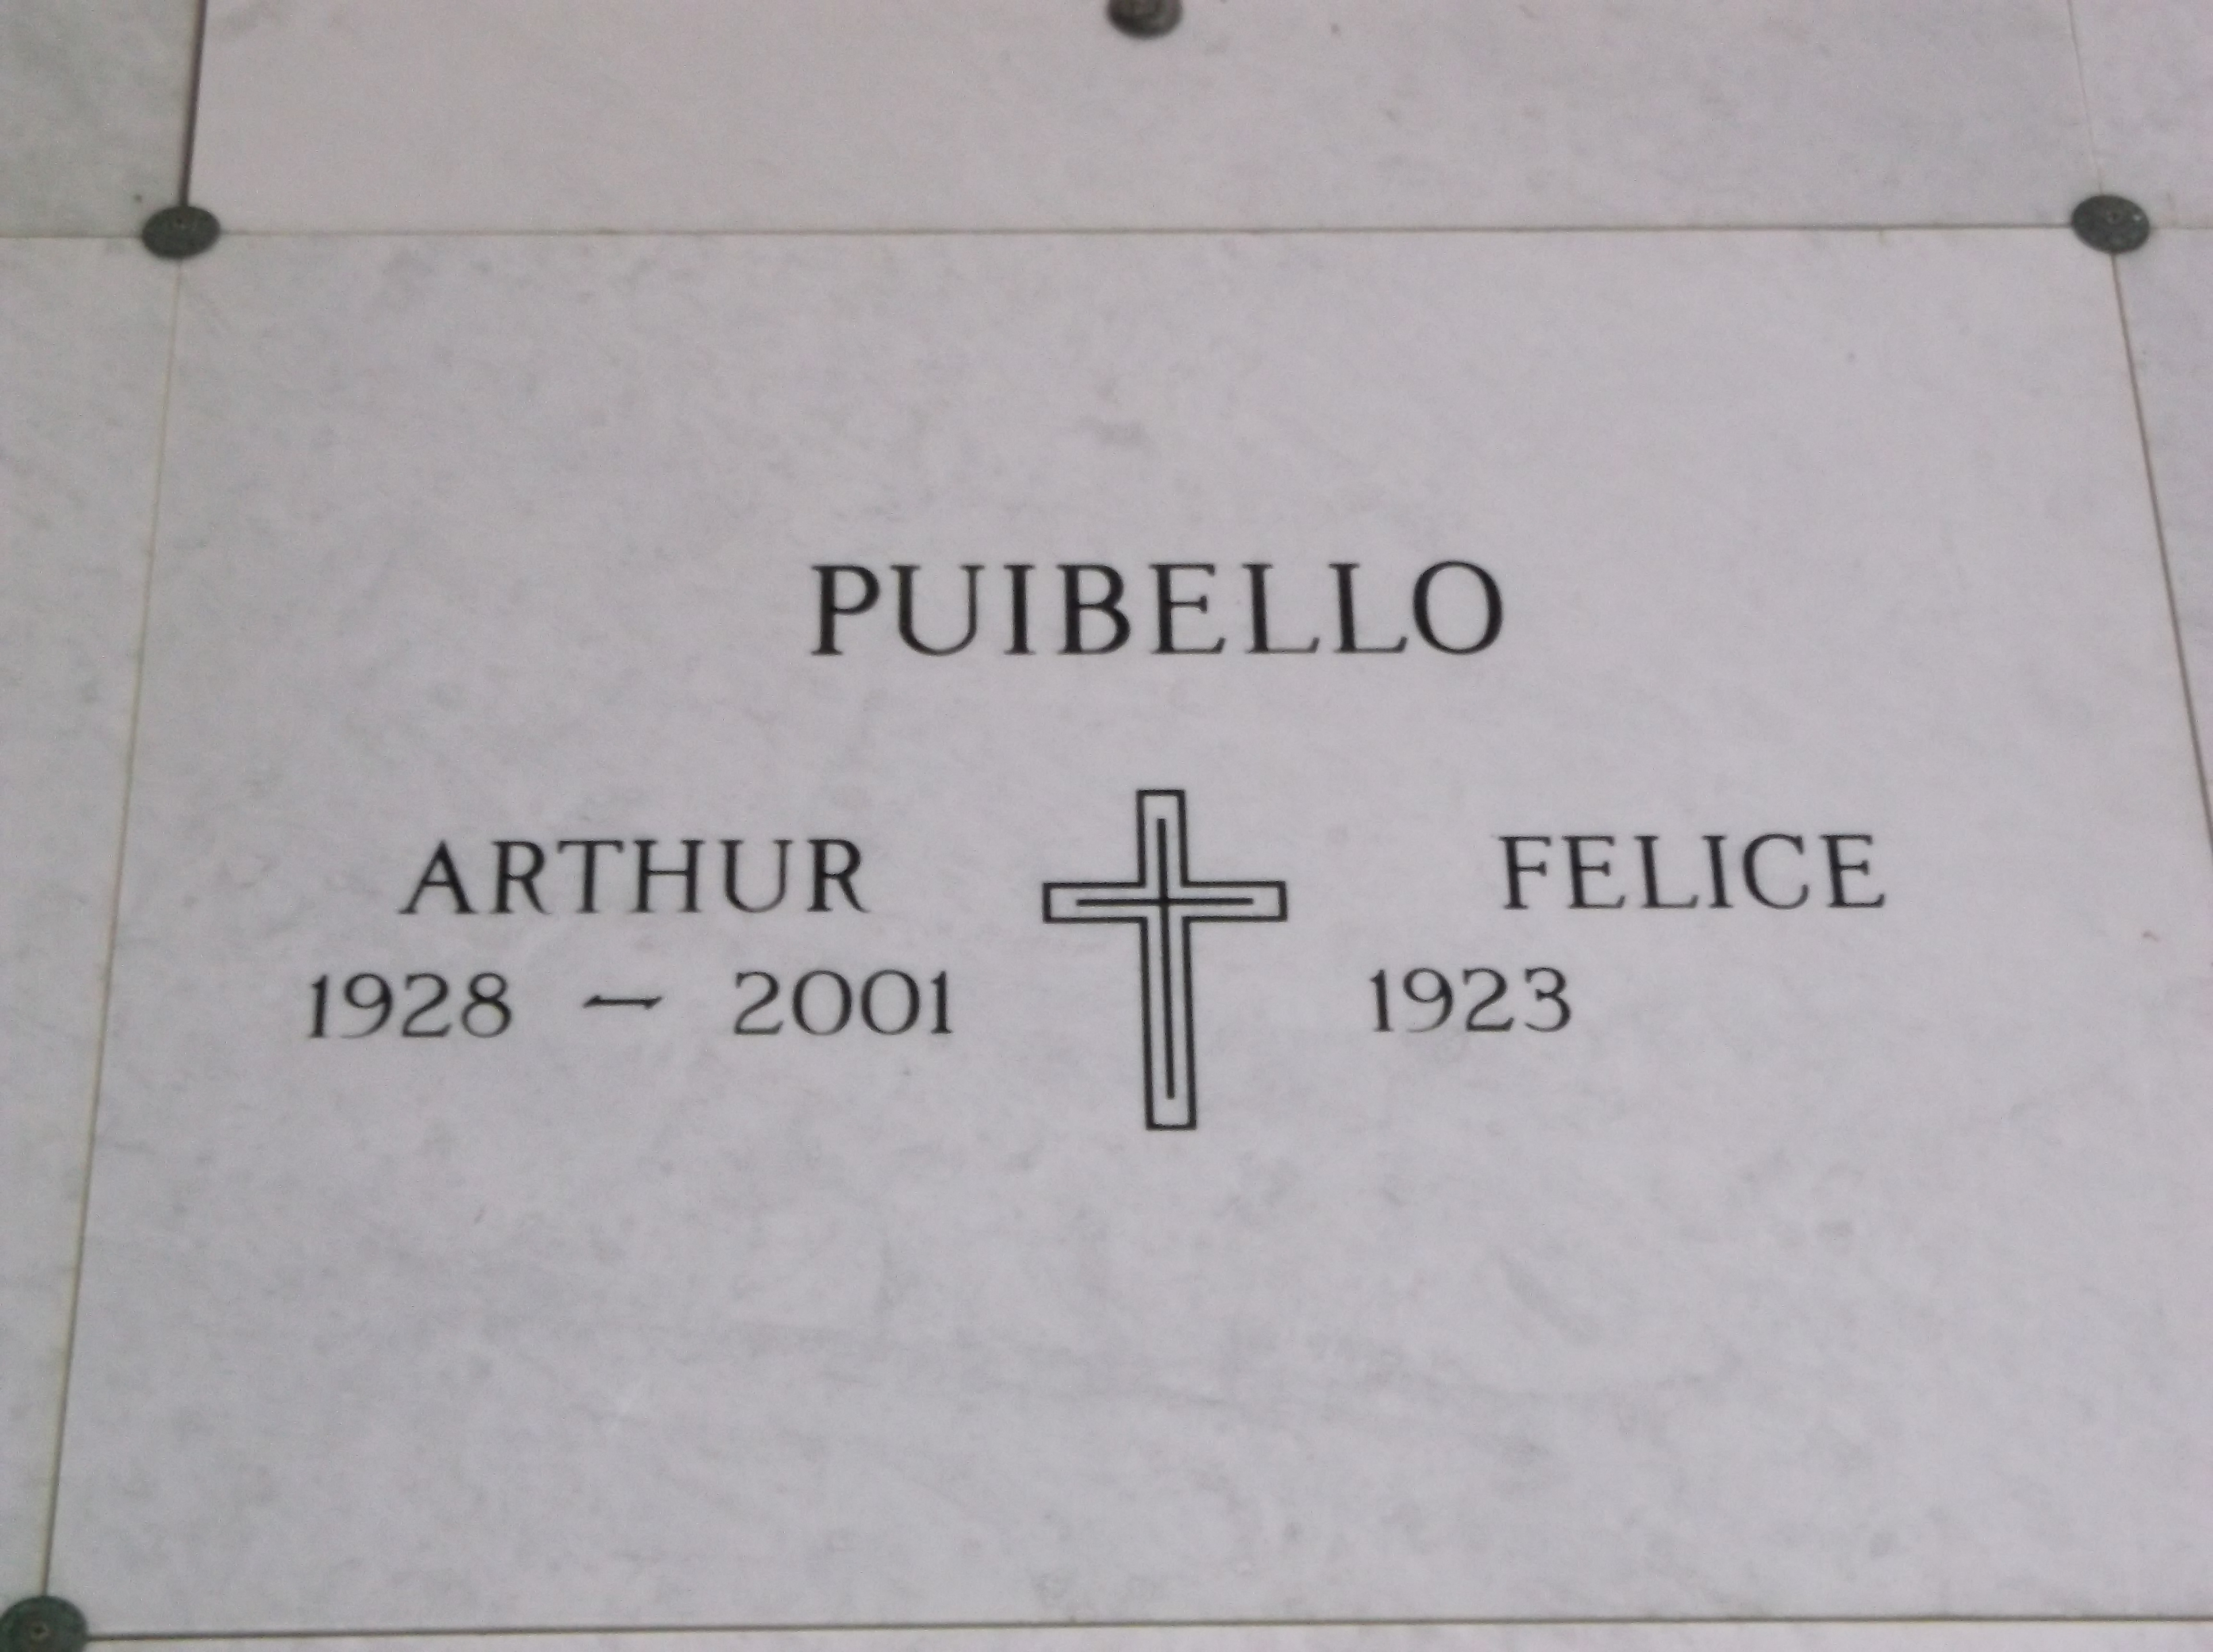 Arthur Puibello